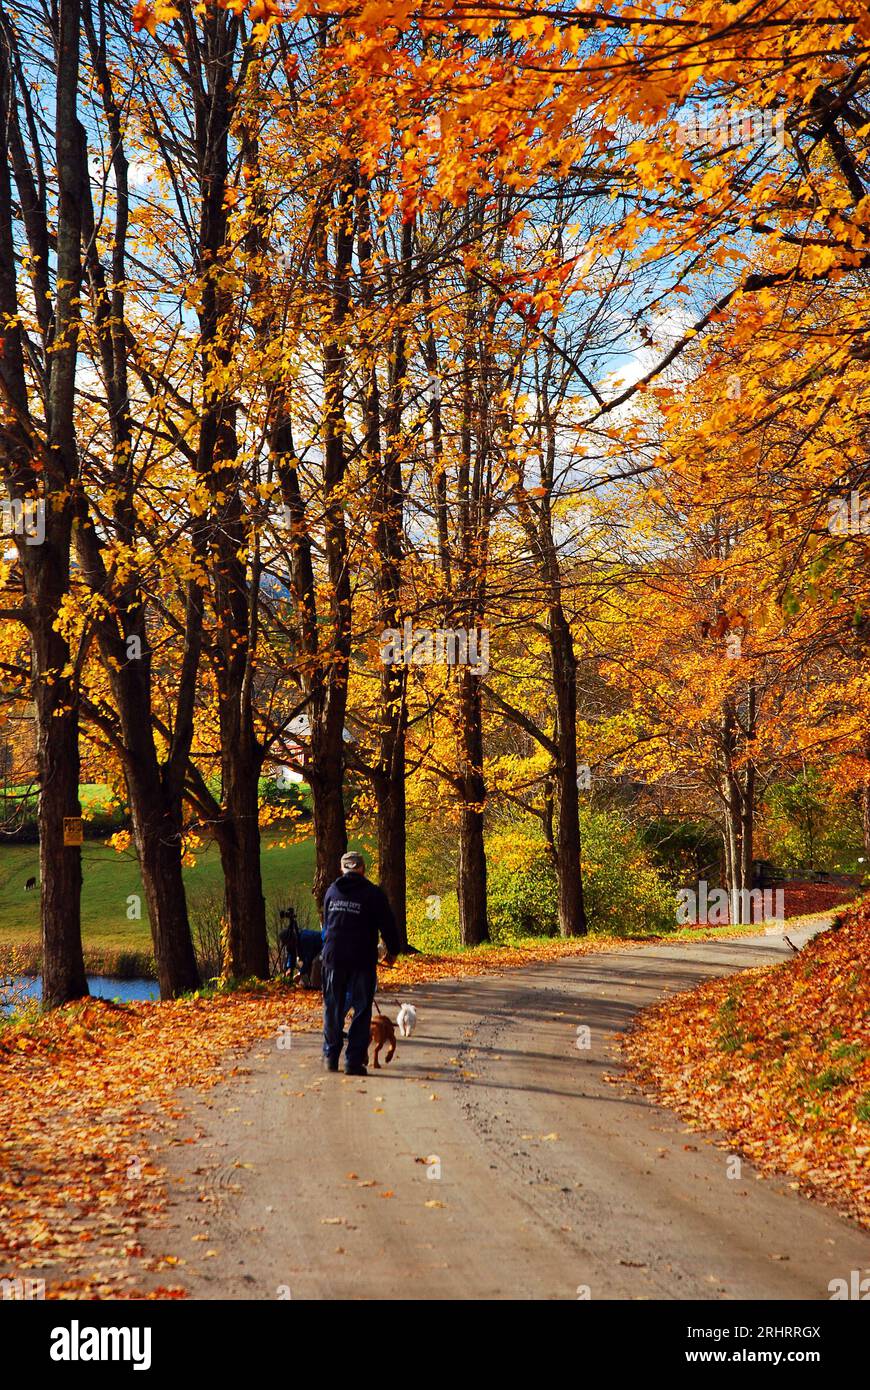 Un homme adulte promène son chien le long d'une route rurale de campagne en automne en Nouvelle-Angleterre entouré de feuillage d'automne Banque D'Images